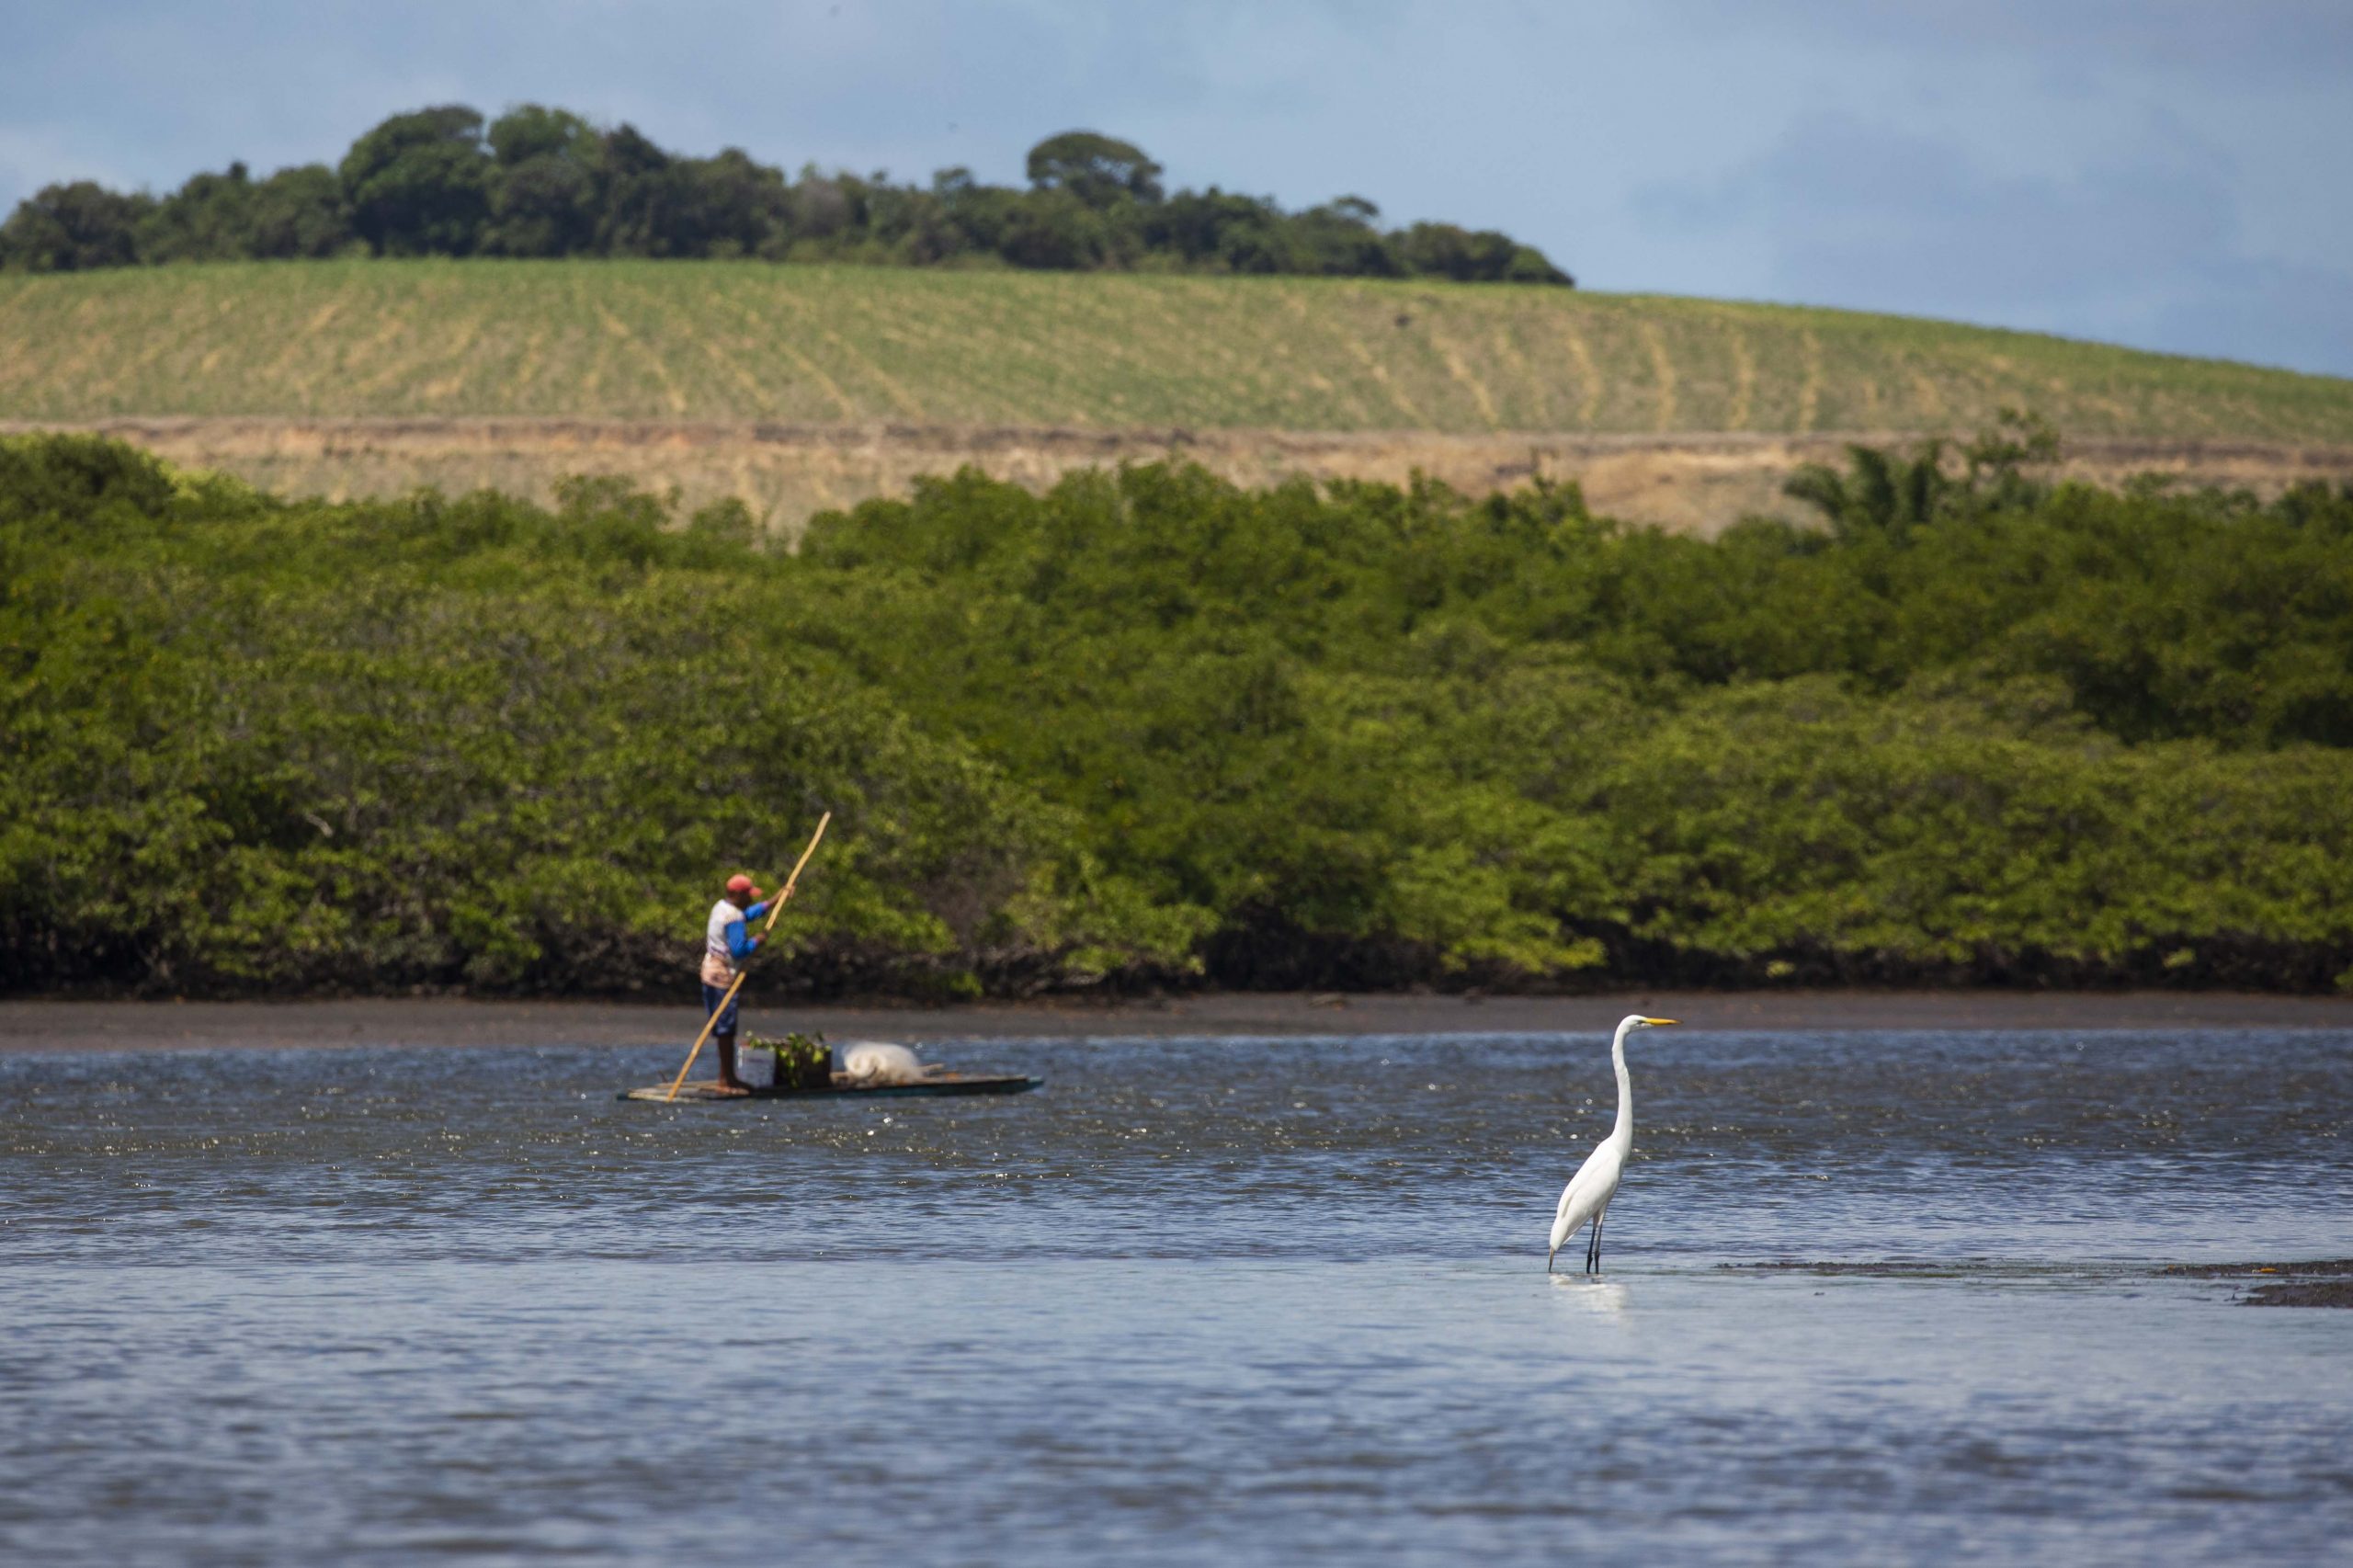 Imagens dos trabalhos de monitoramento de Beatrice Padovani e sua equipe mangue na região do Rio Formoso em Tamandaré, PE